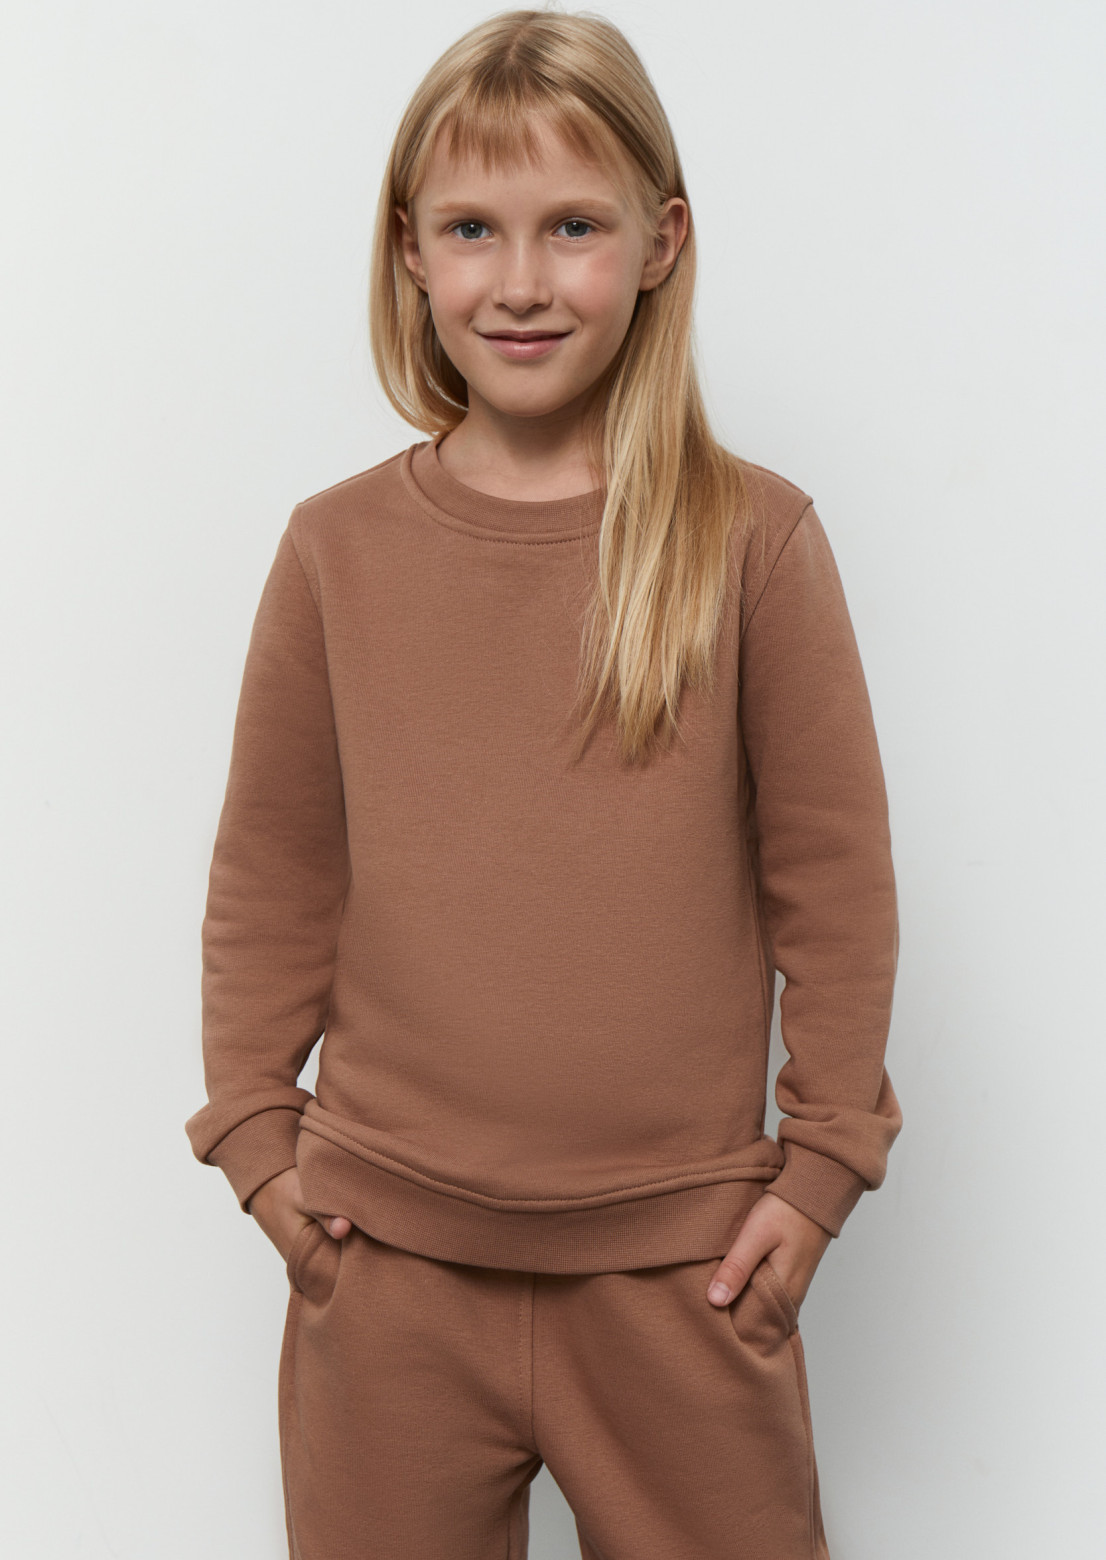 Children's three-mesh sweatshirt bear 